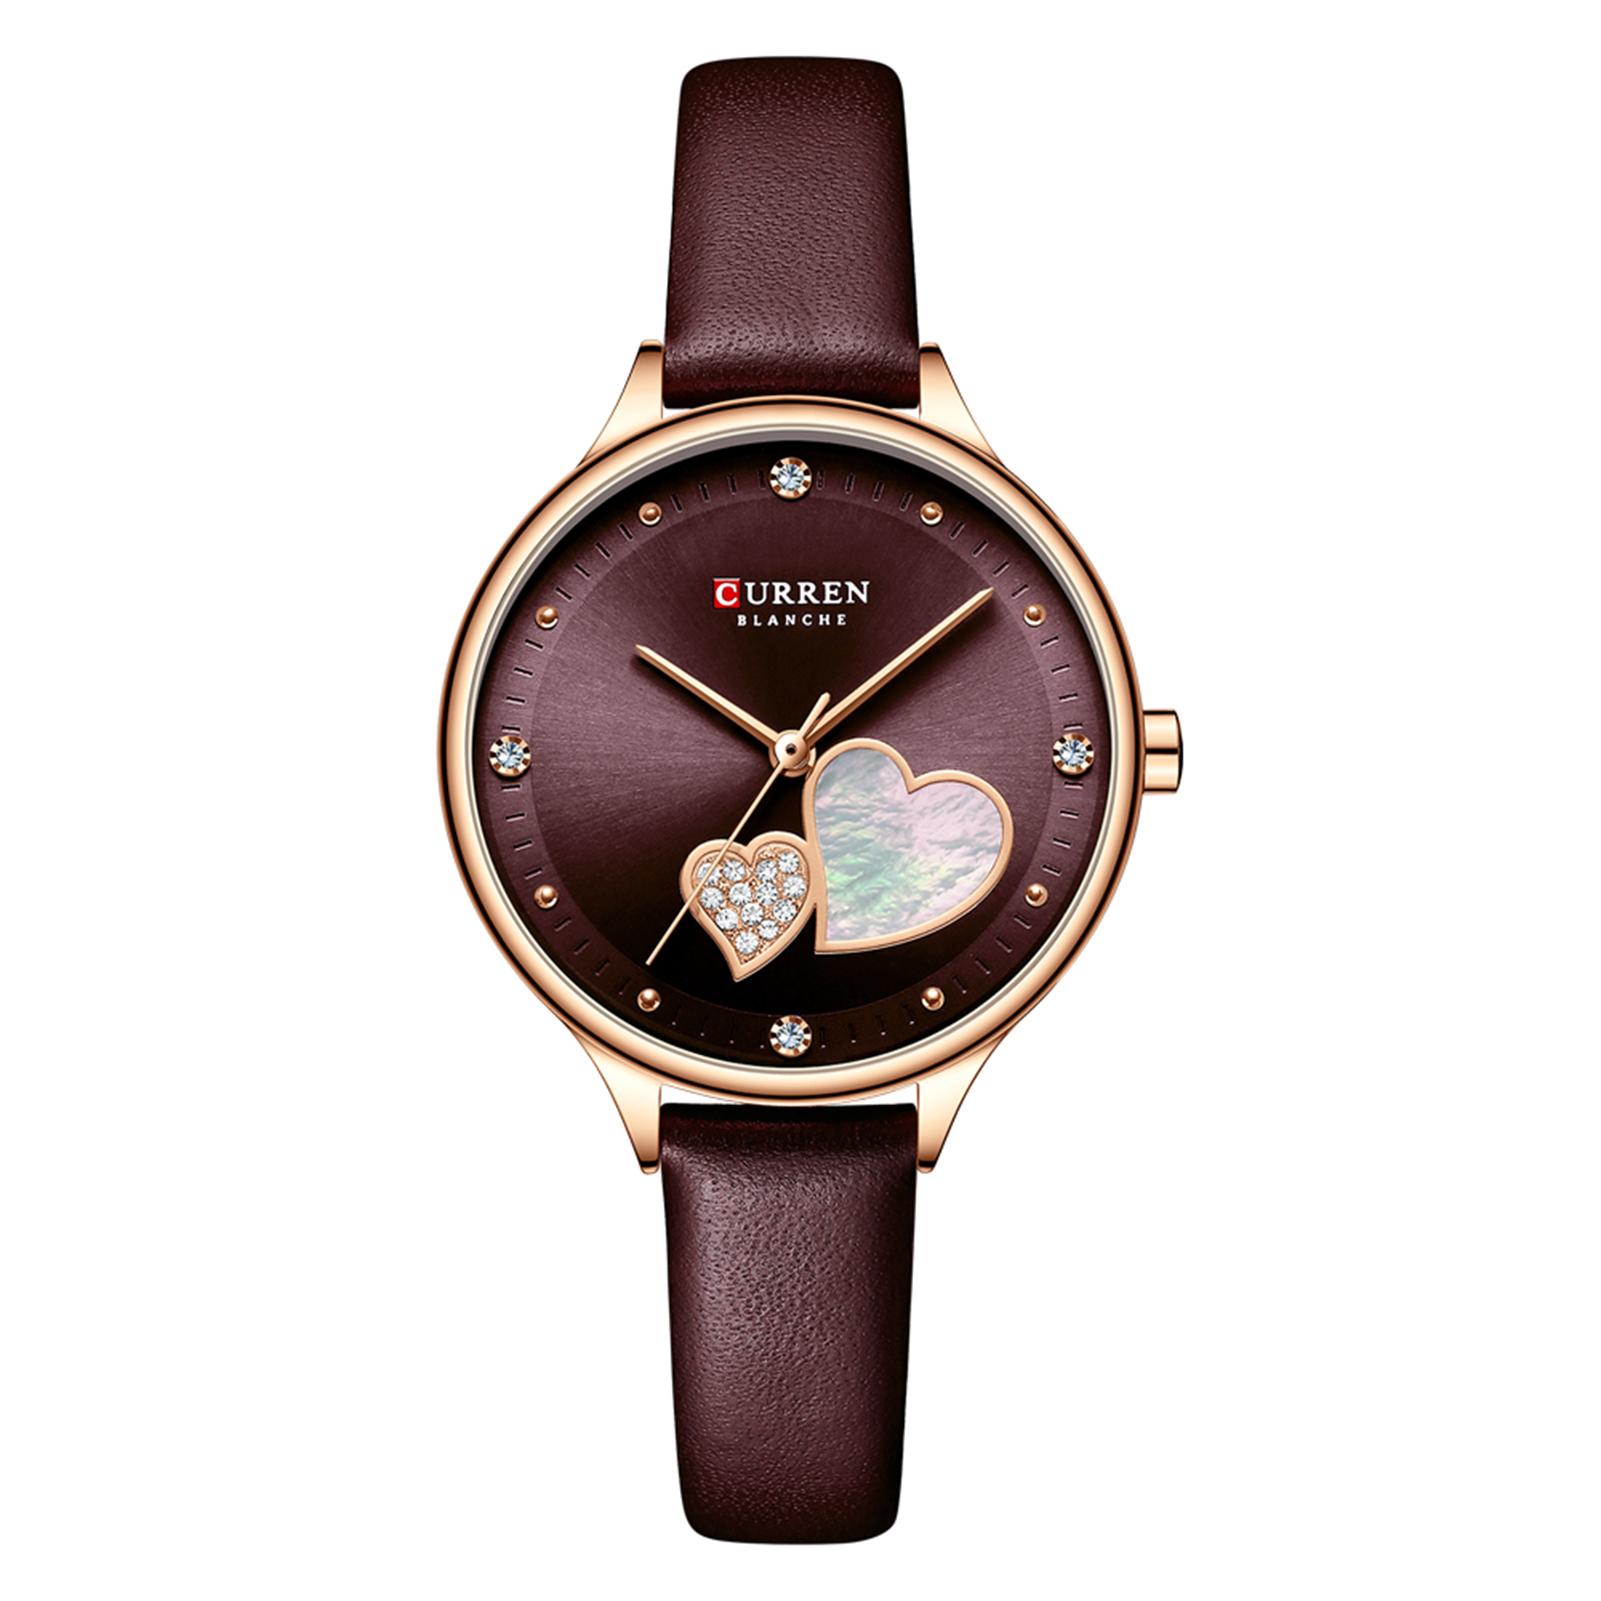 Đồng hồ đeo tay nữ thời trang CURREN chống nước 3ATM với dây đeo đồng hồ bằng da